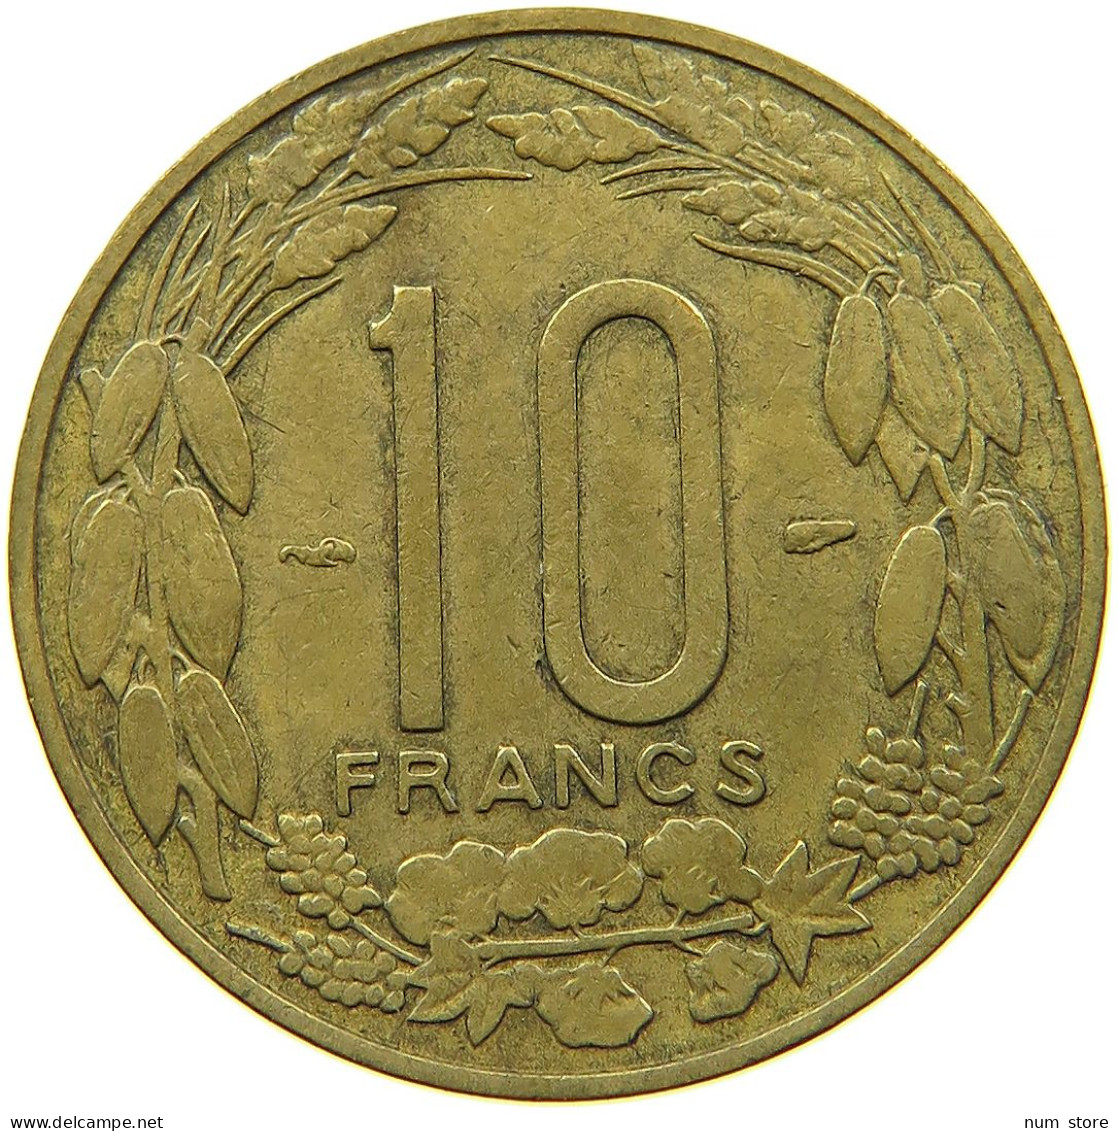 CAMEROON 10 FRANCS 1958 #s089 0177 - Cameroun